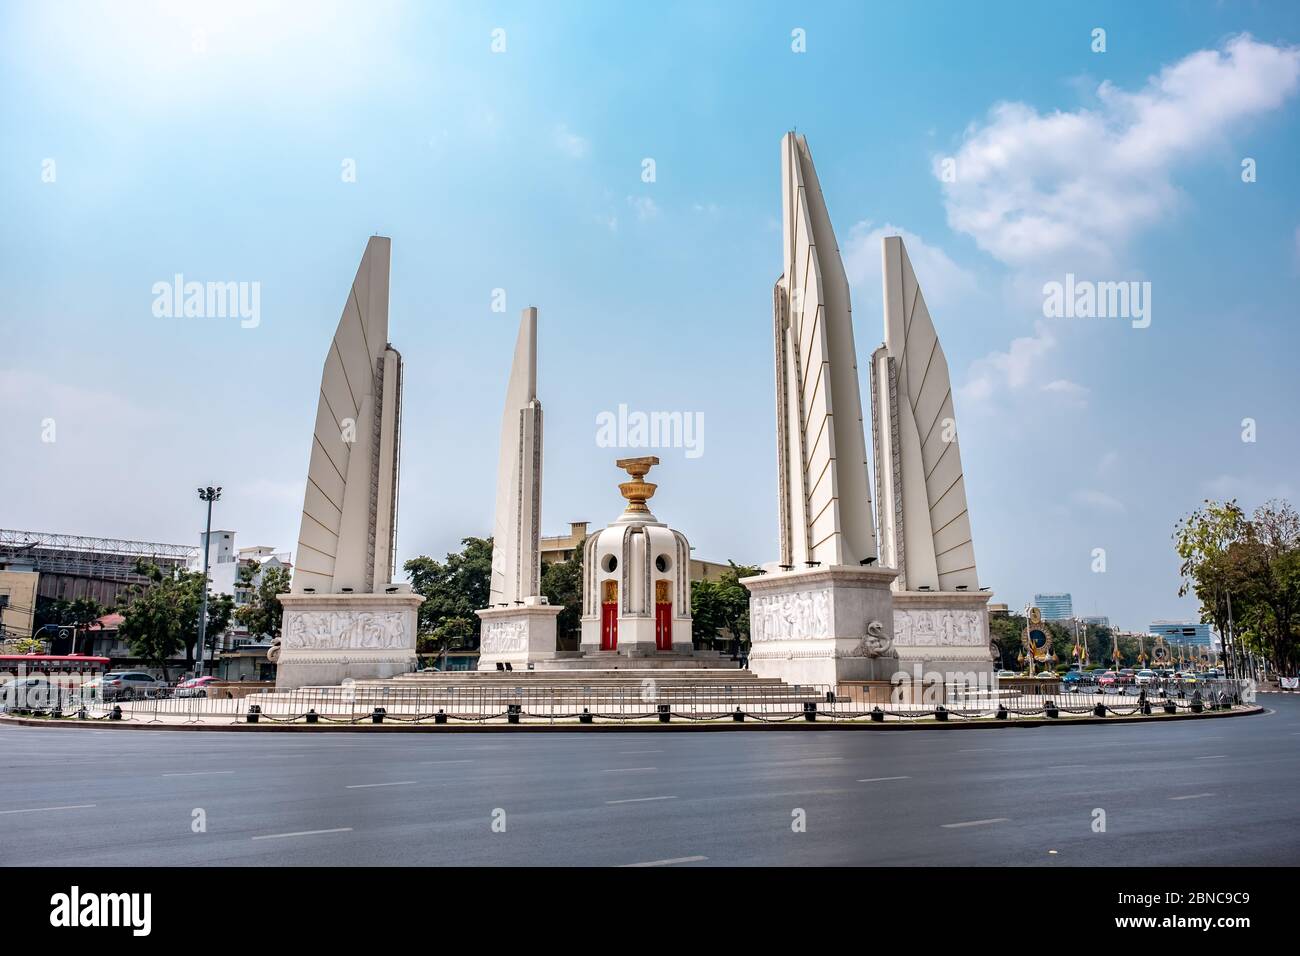 Bangkok / Thailandia - 28 gennaio 2020: Monumento alla democrazia nel centro di Bangkok. Il monumento è l'icona della città di Bangkok Foto Stock